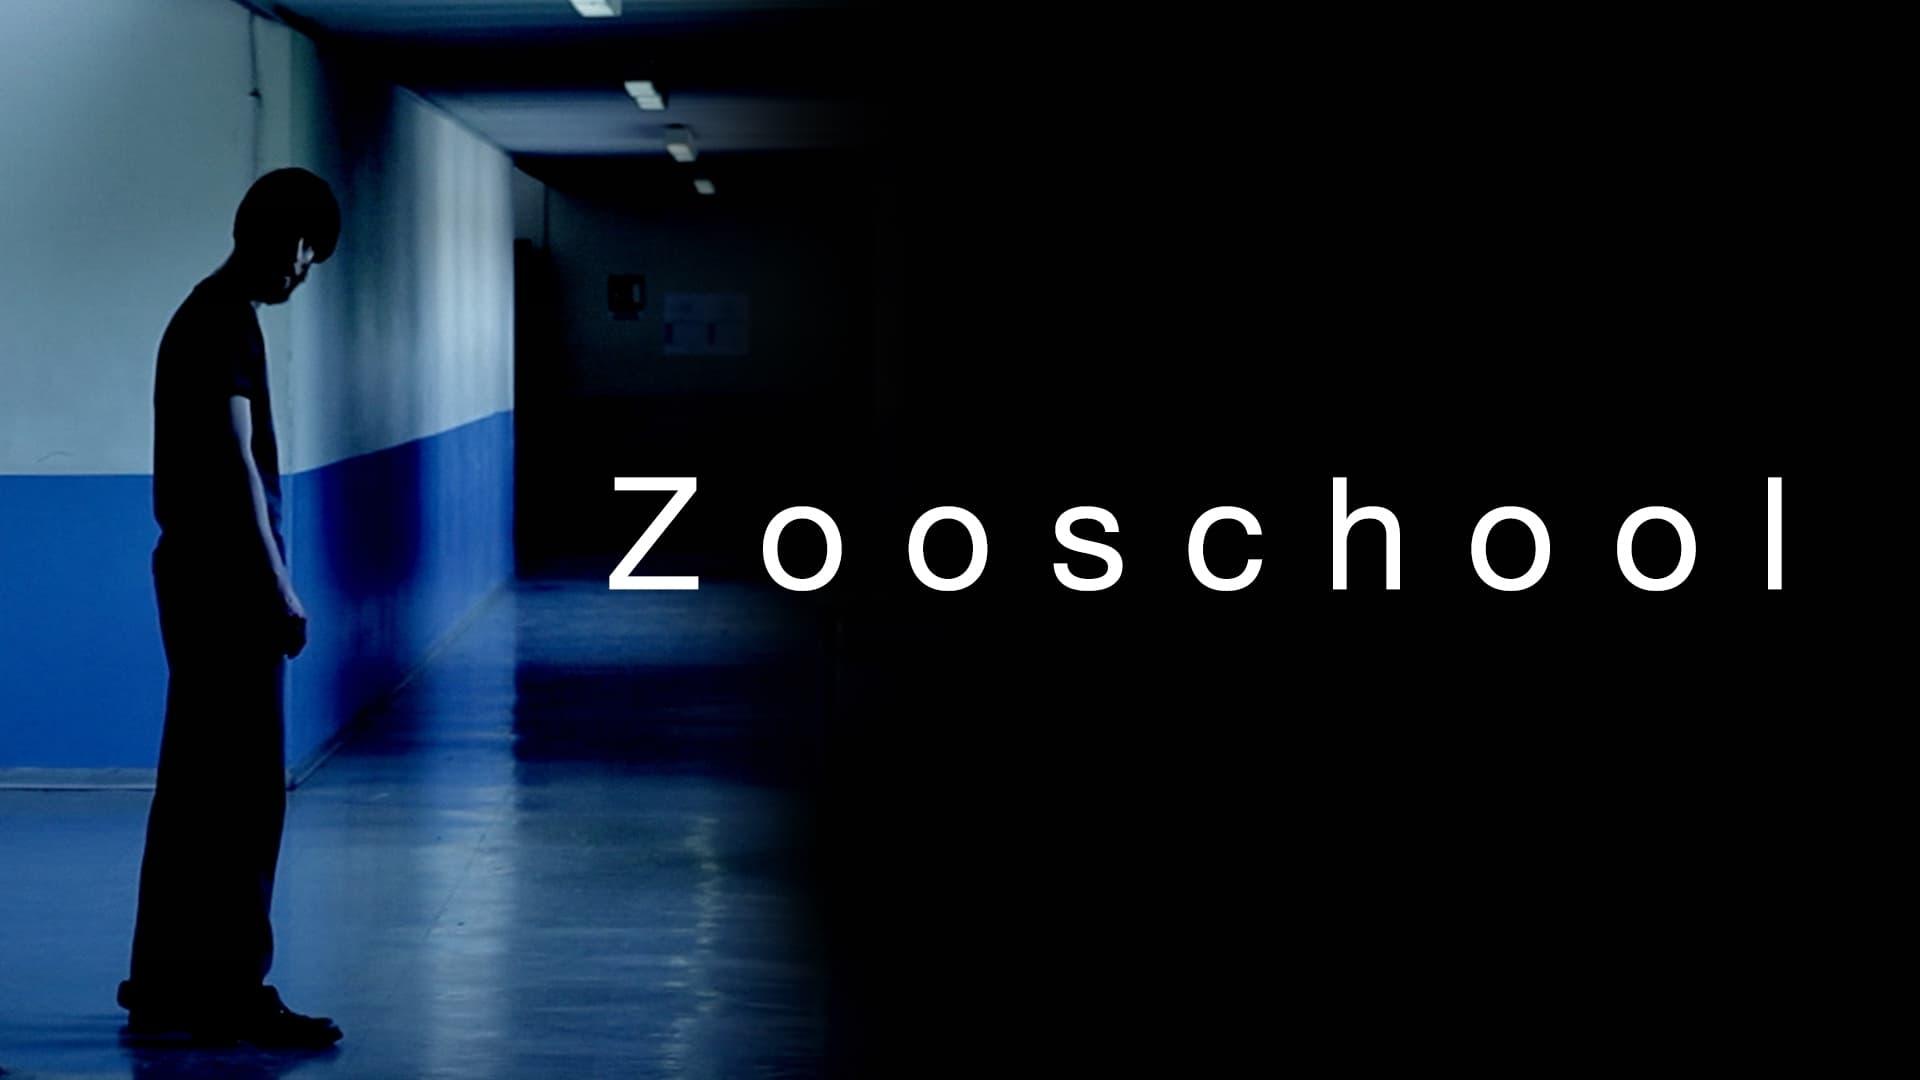 Zoo School backdrop